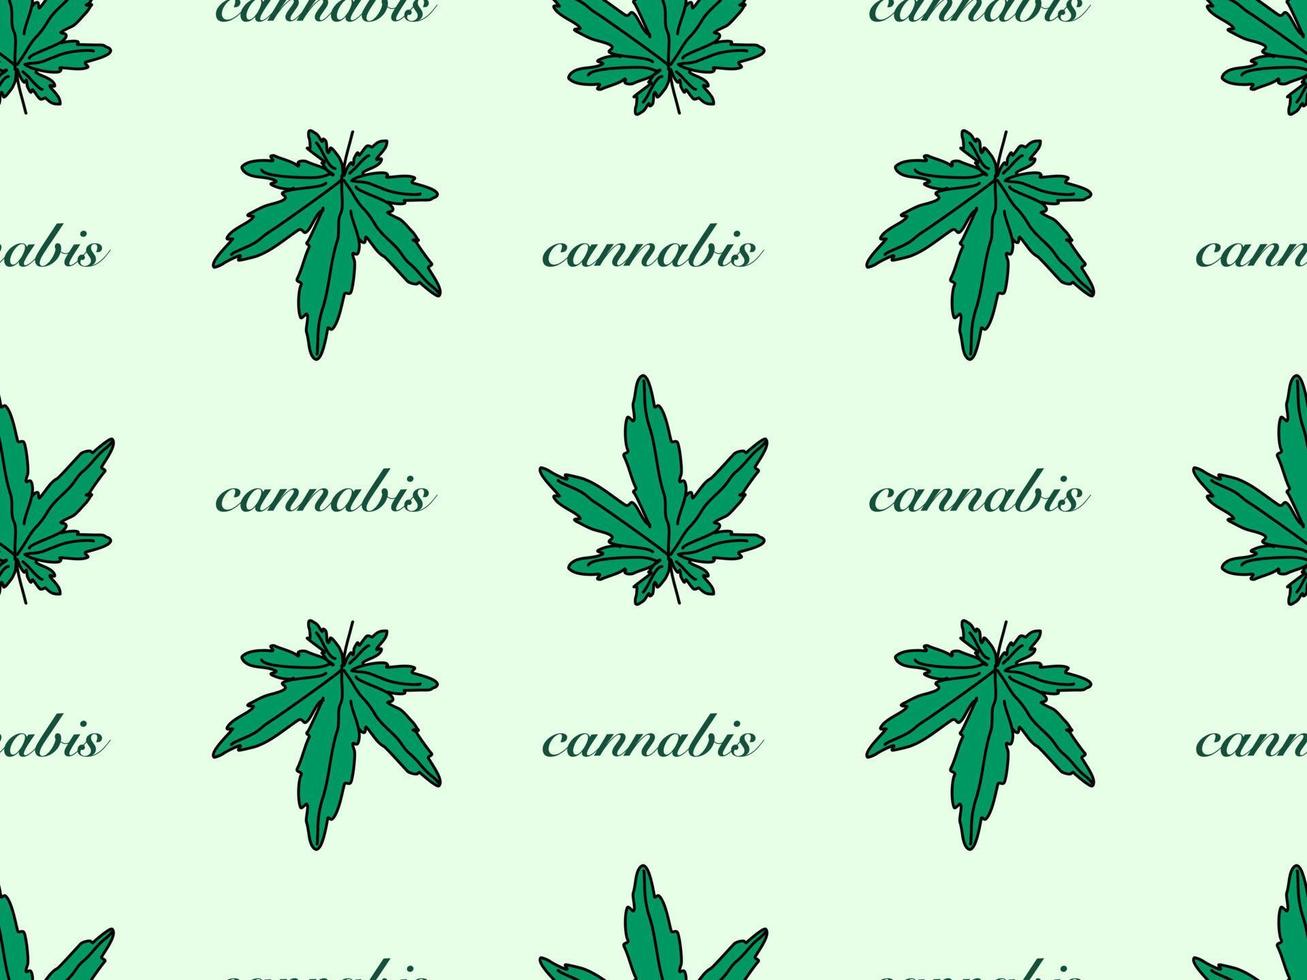 nahtloses muster der cannabiszeichentrickfigur auf grünem hintergrund vektor